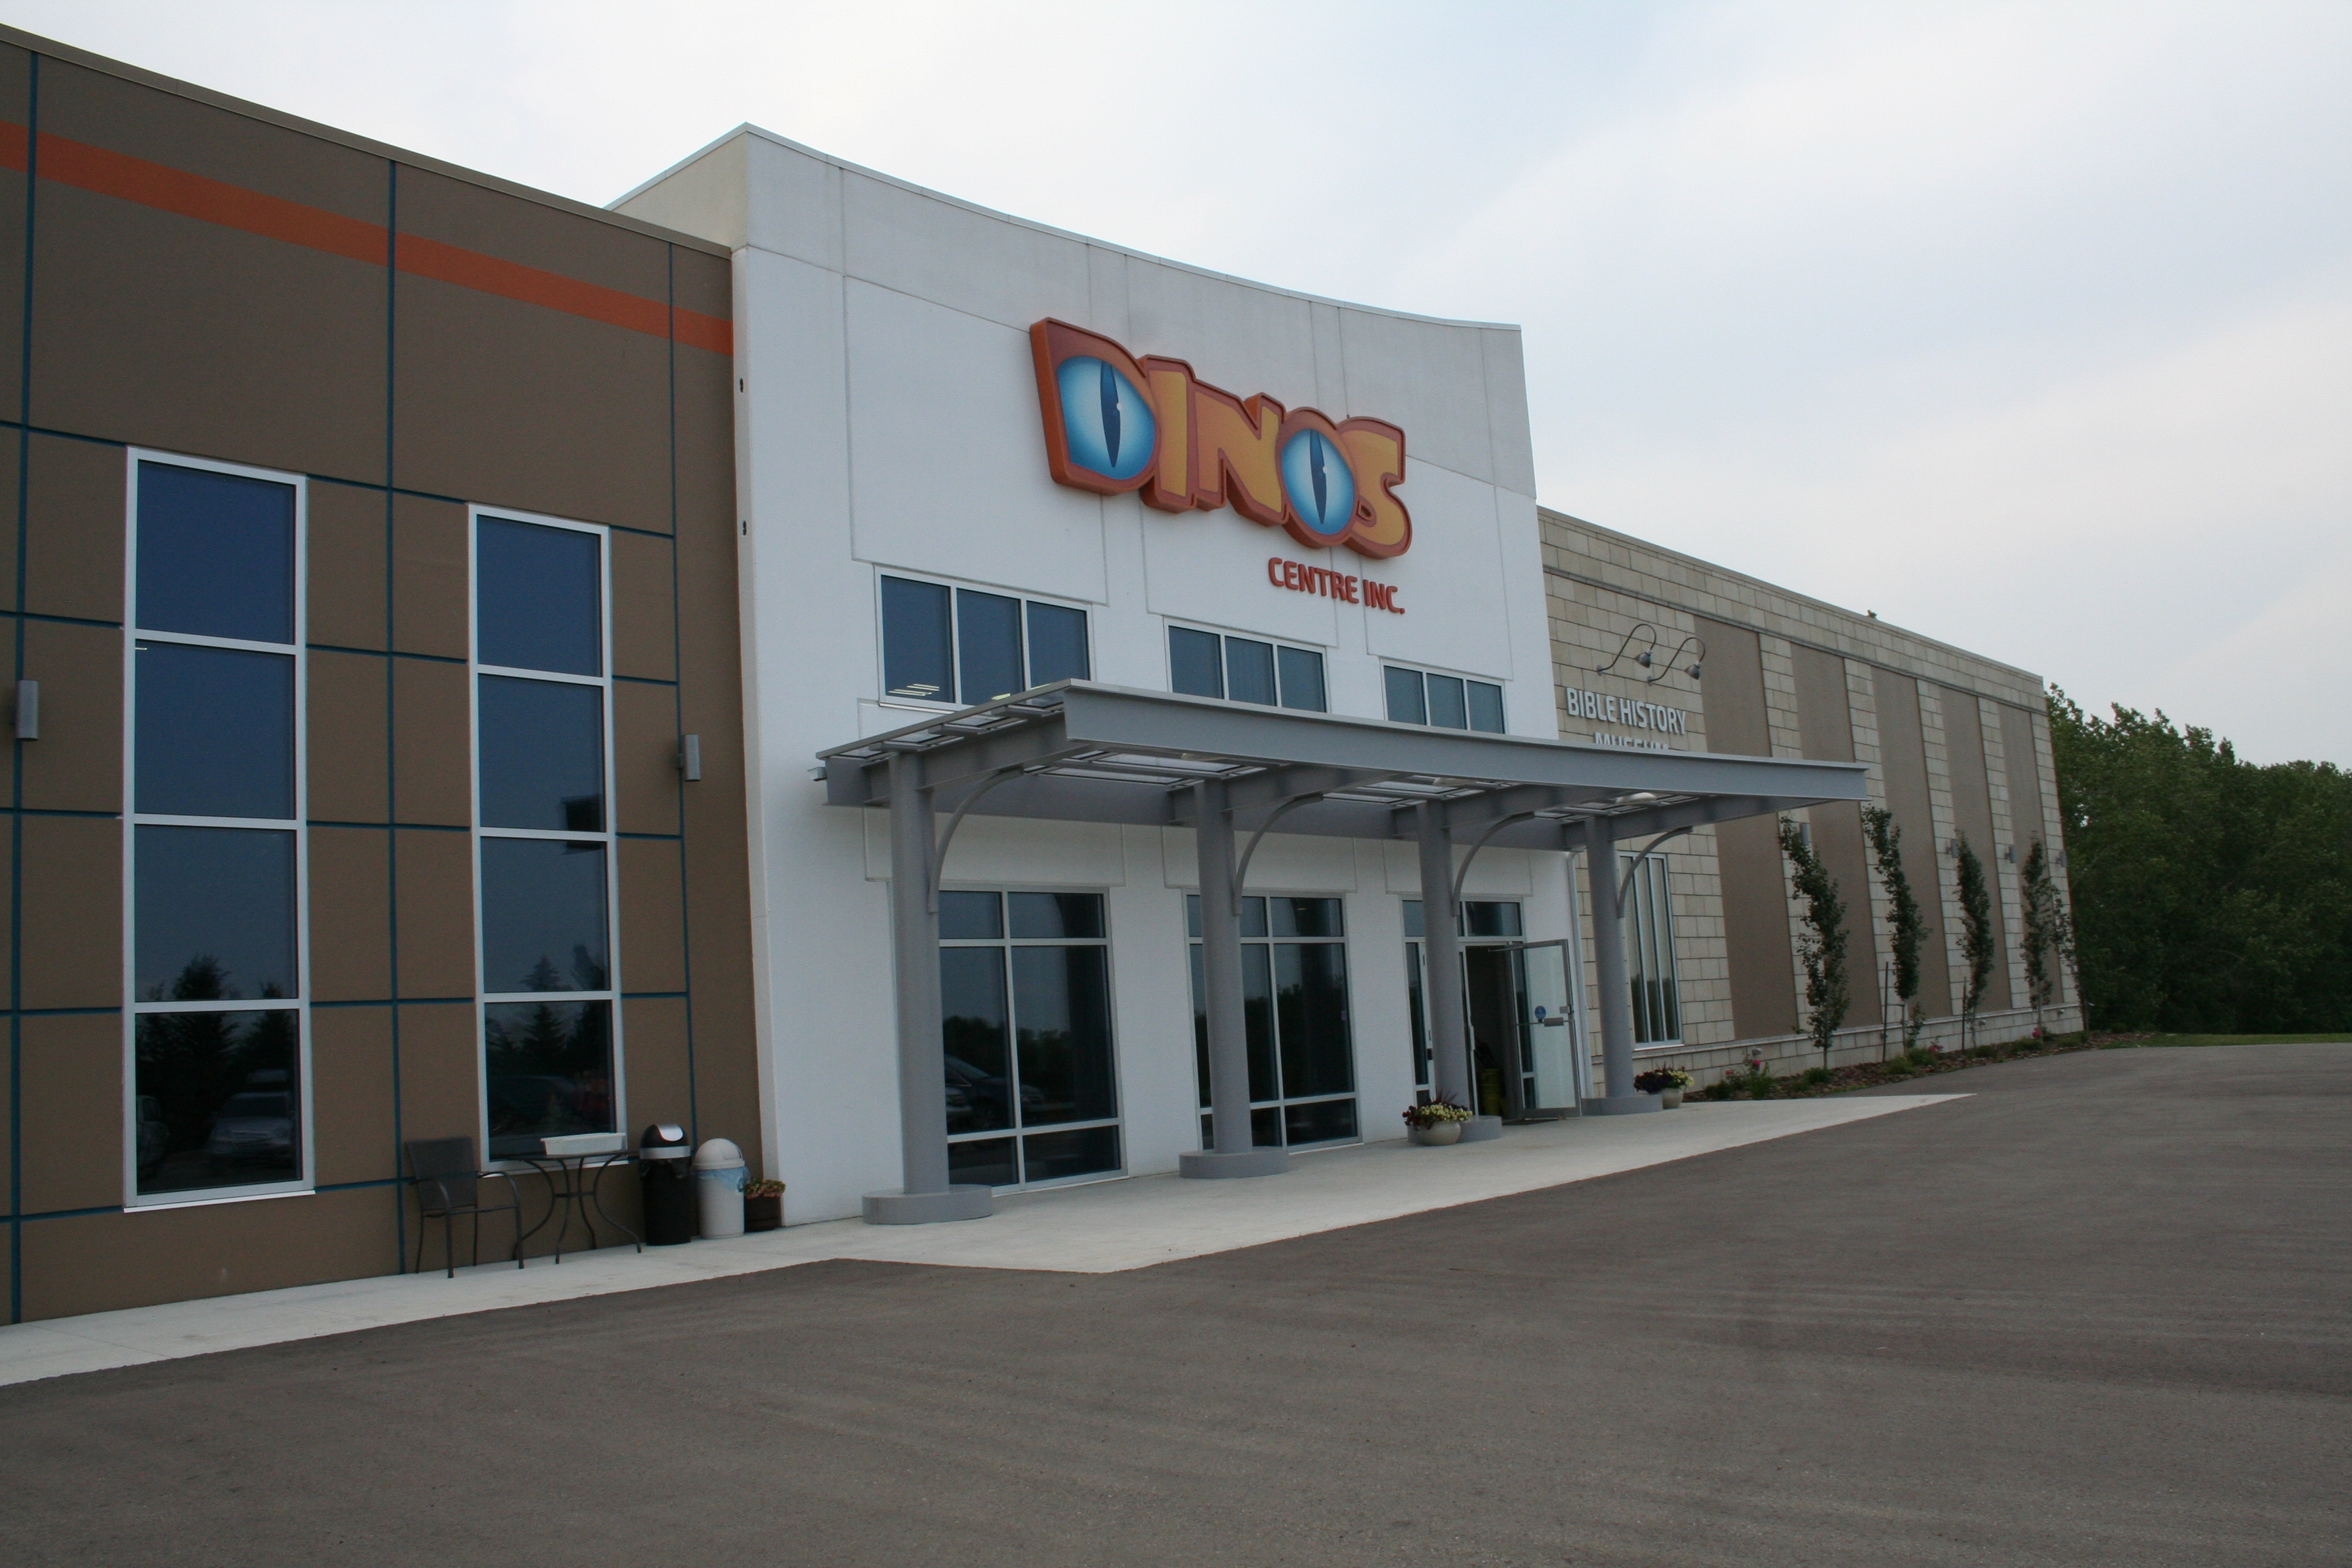 New to Alberta — DINOS Centre